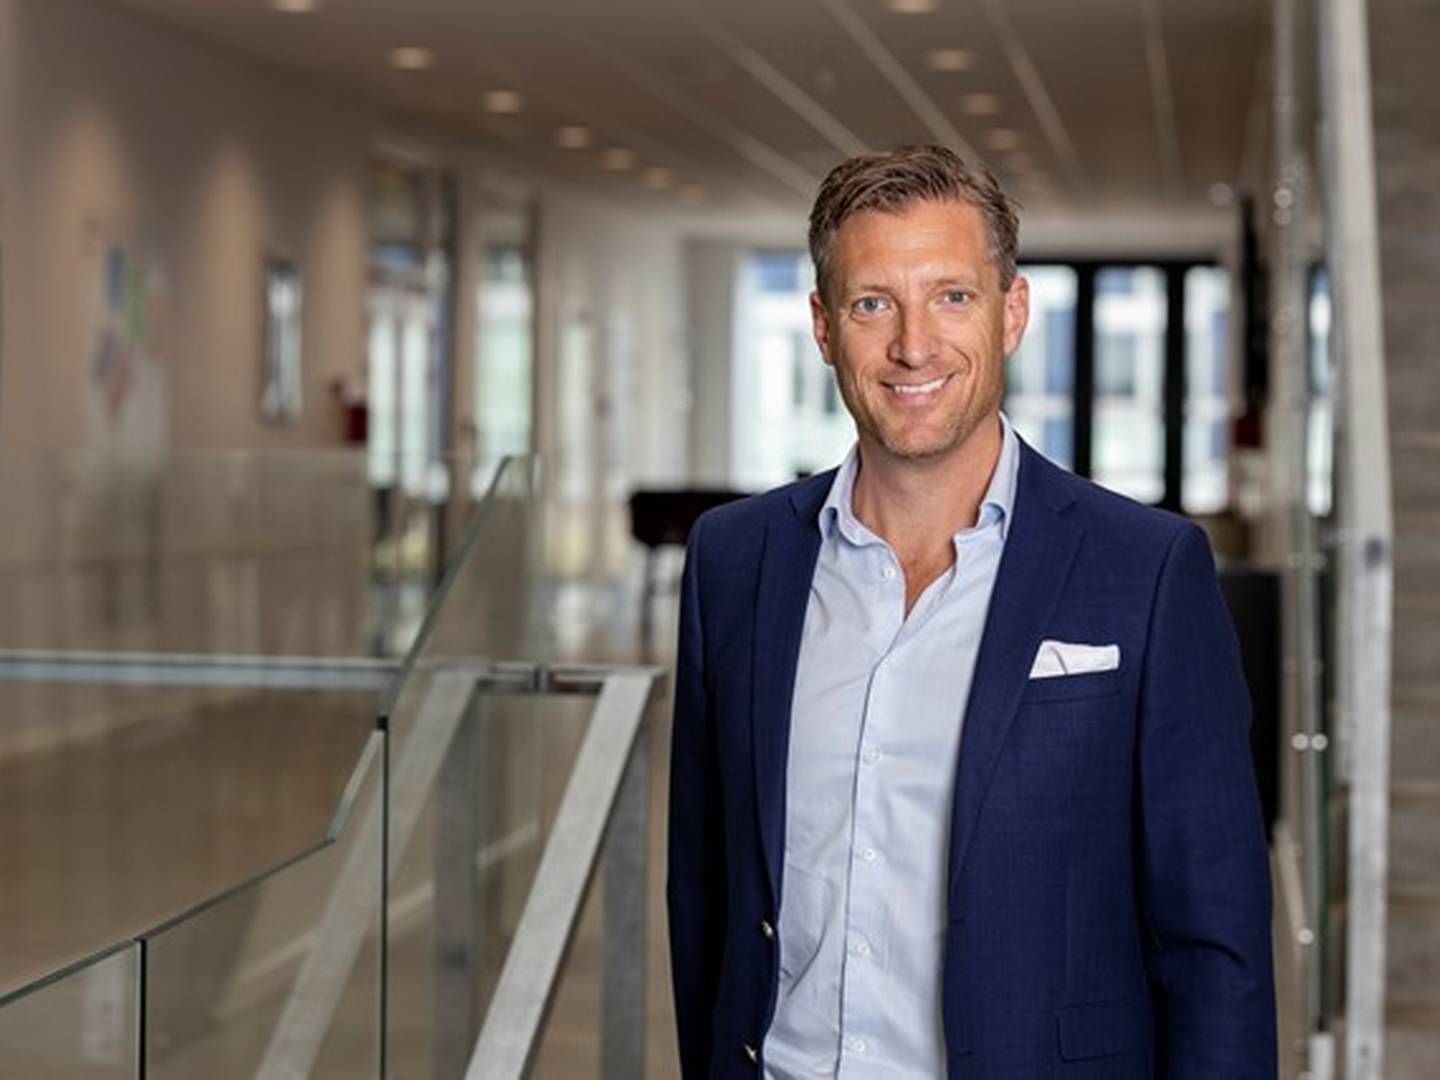 Torsdag tiltrådte Kristoffer Kaare Stimpel hos VGP som landechef, hvor han skal hjælpe den belgiske investor med at købe ejendomme i Danmark. | Foto: PR / VGP